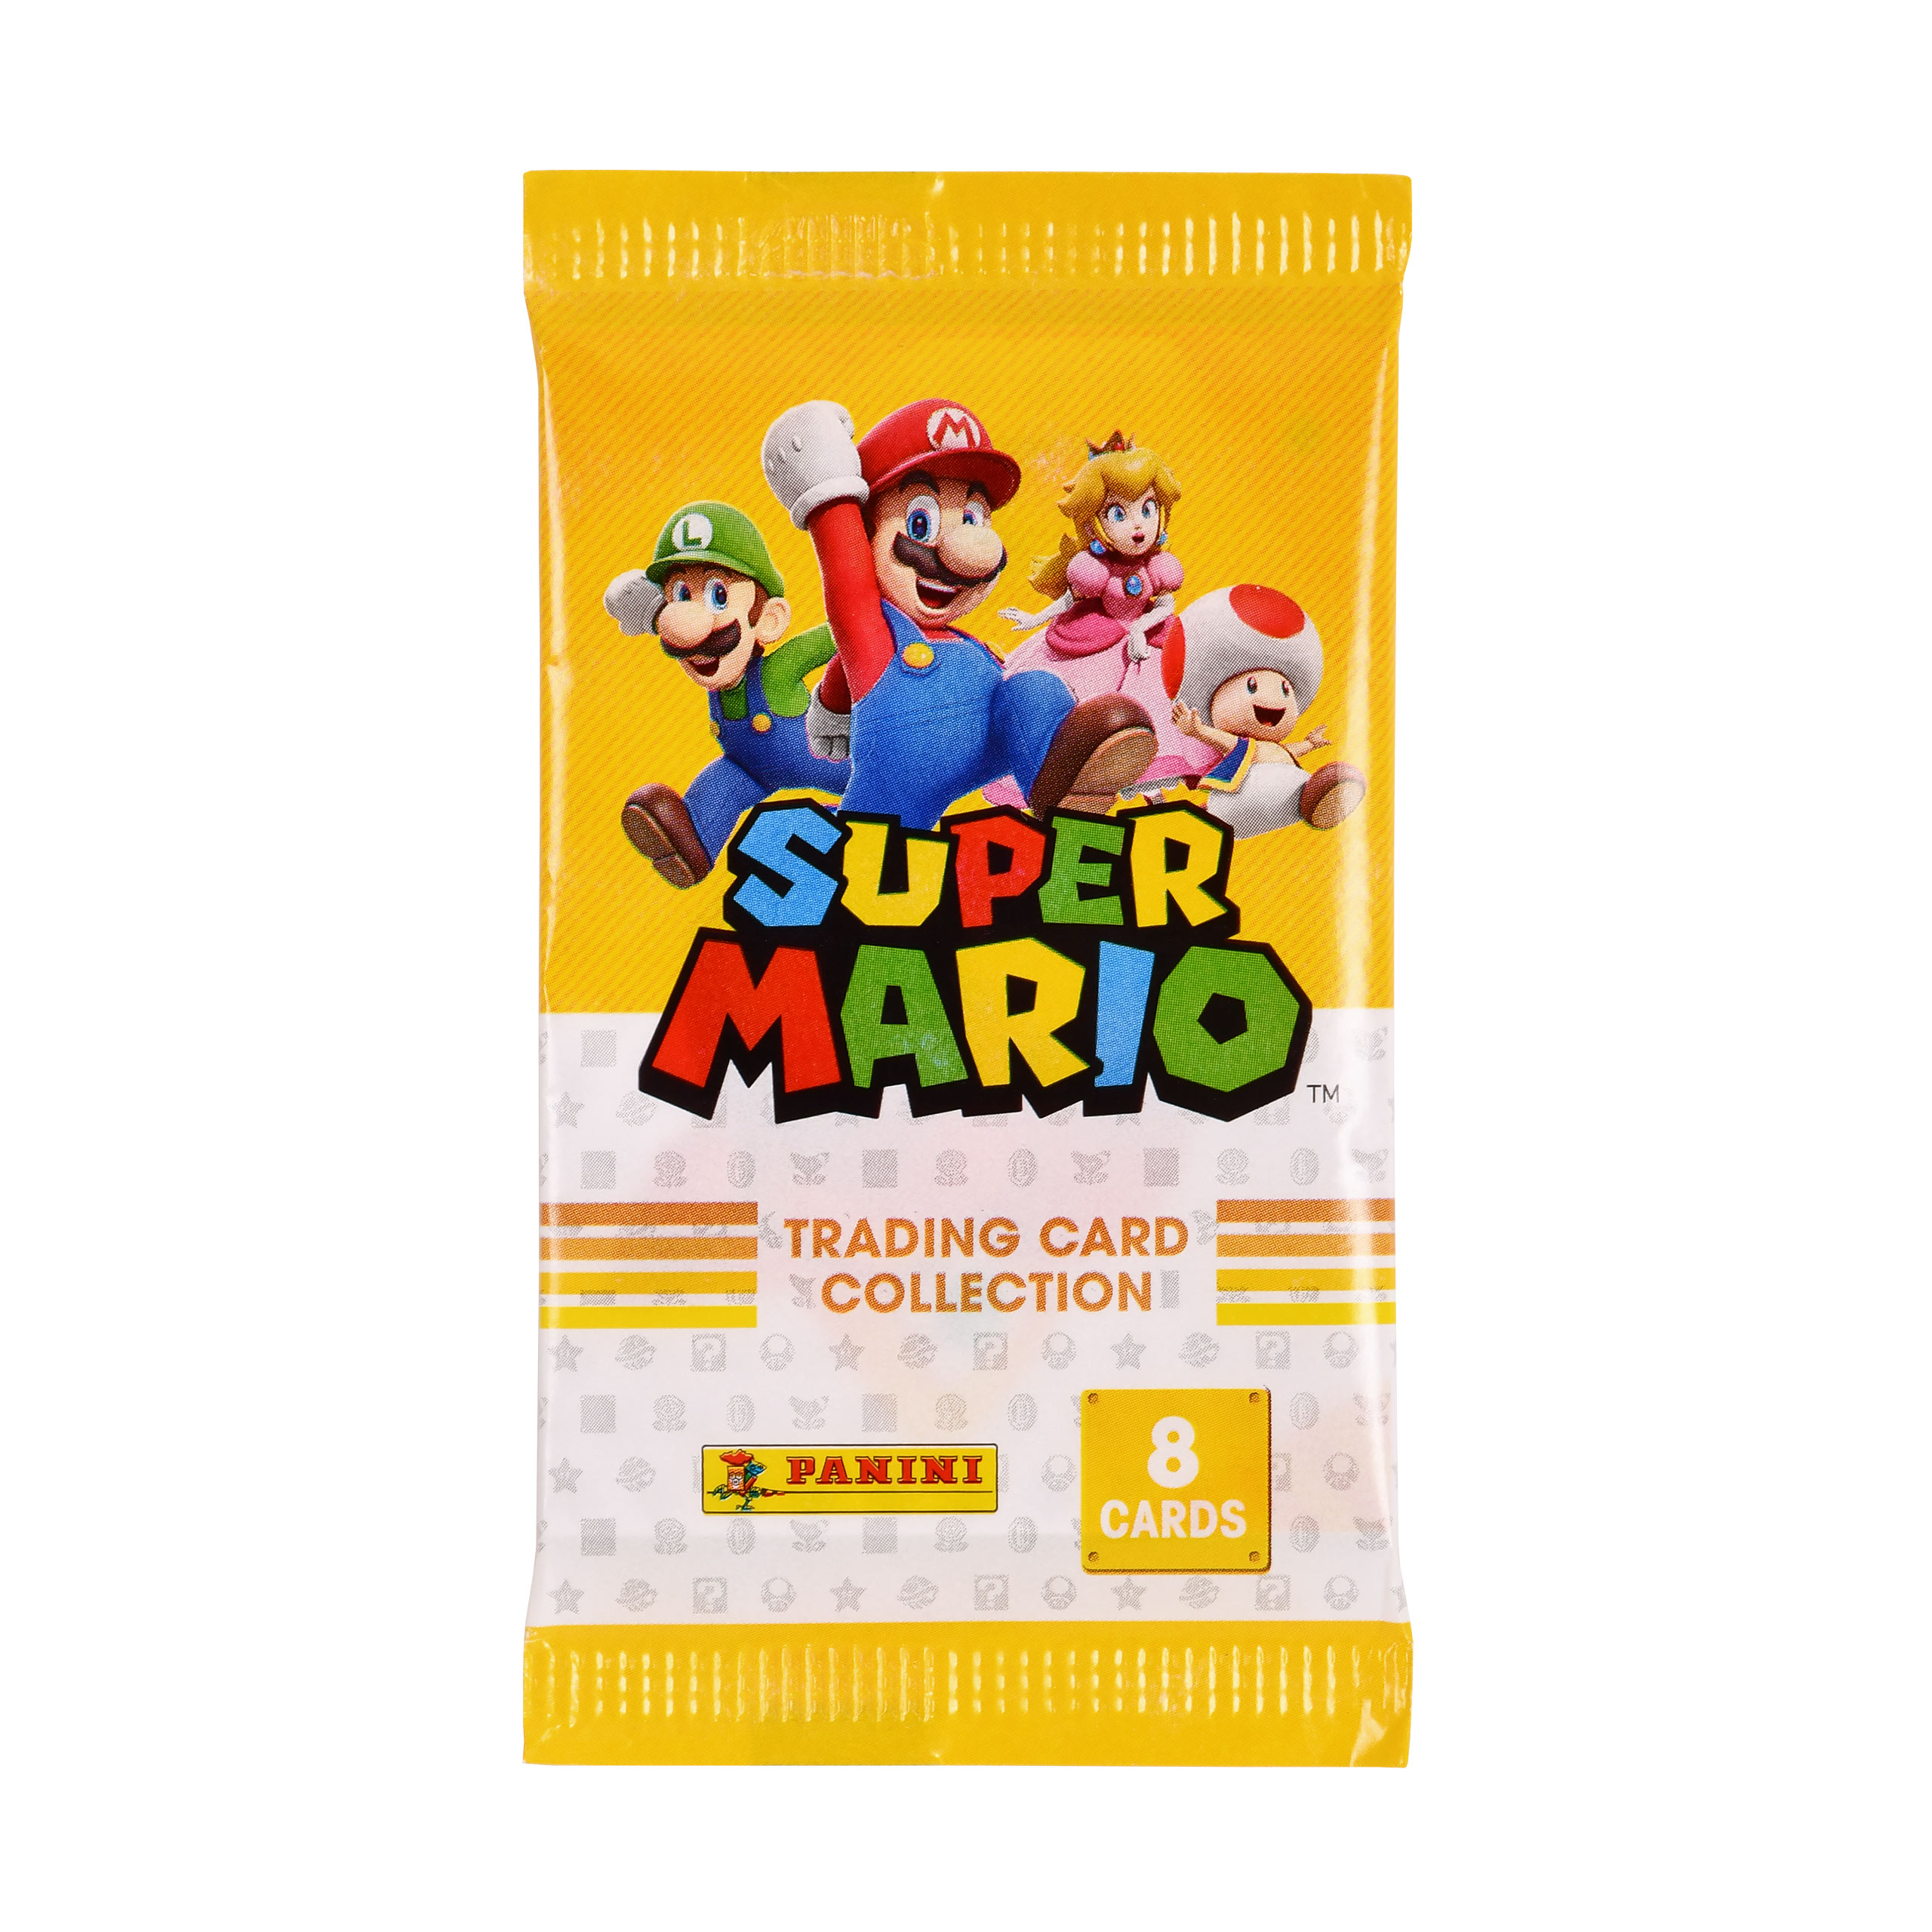 Super Mario - Actie Verzamelkaarten